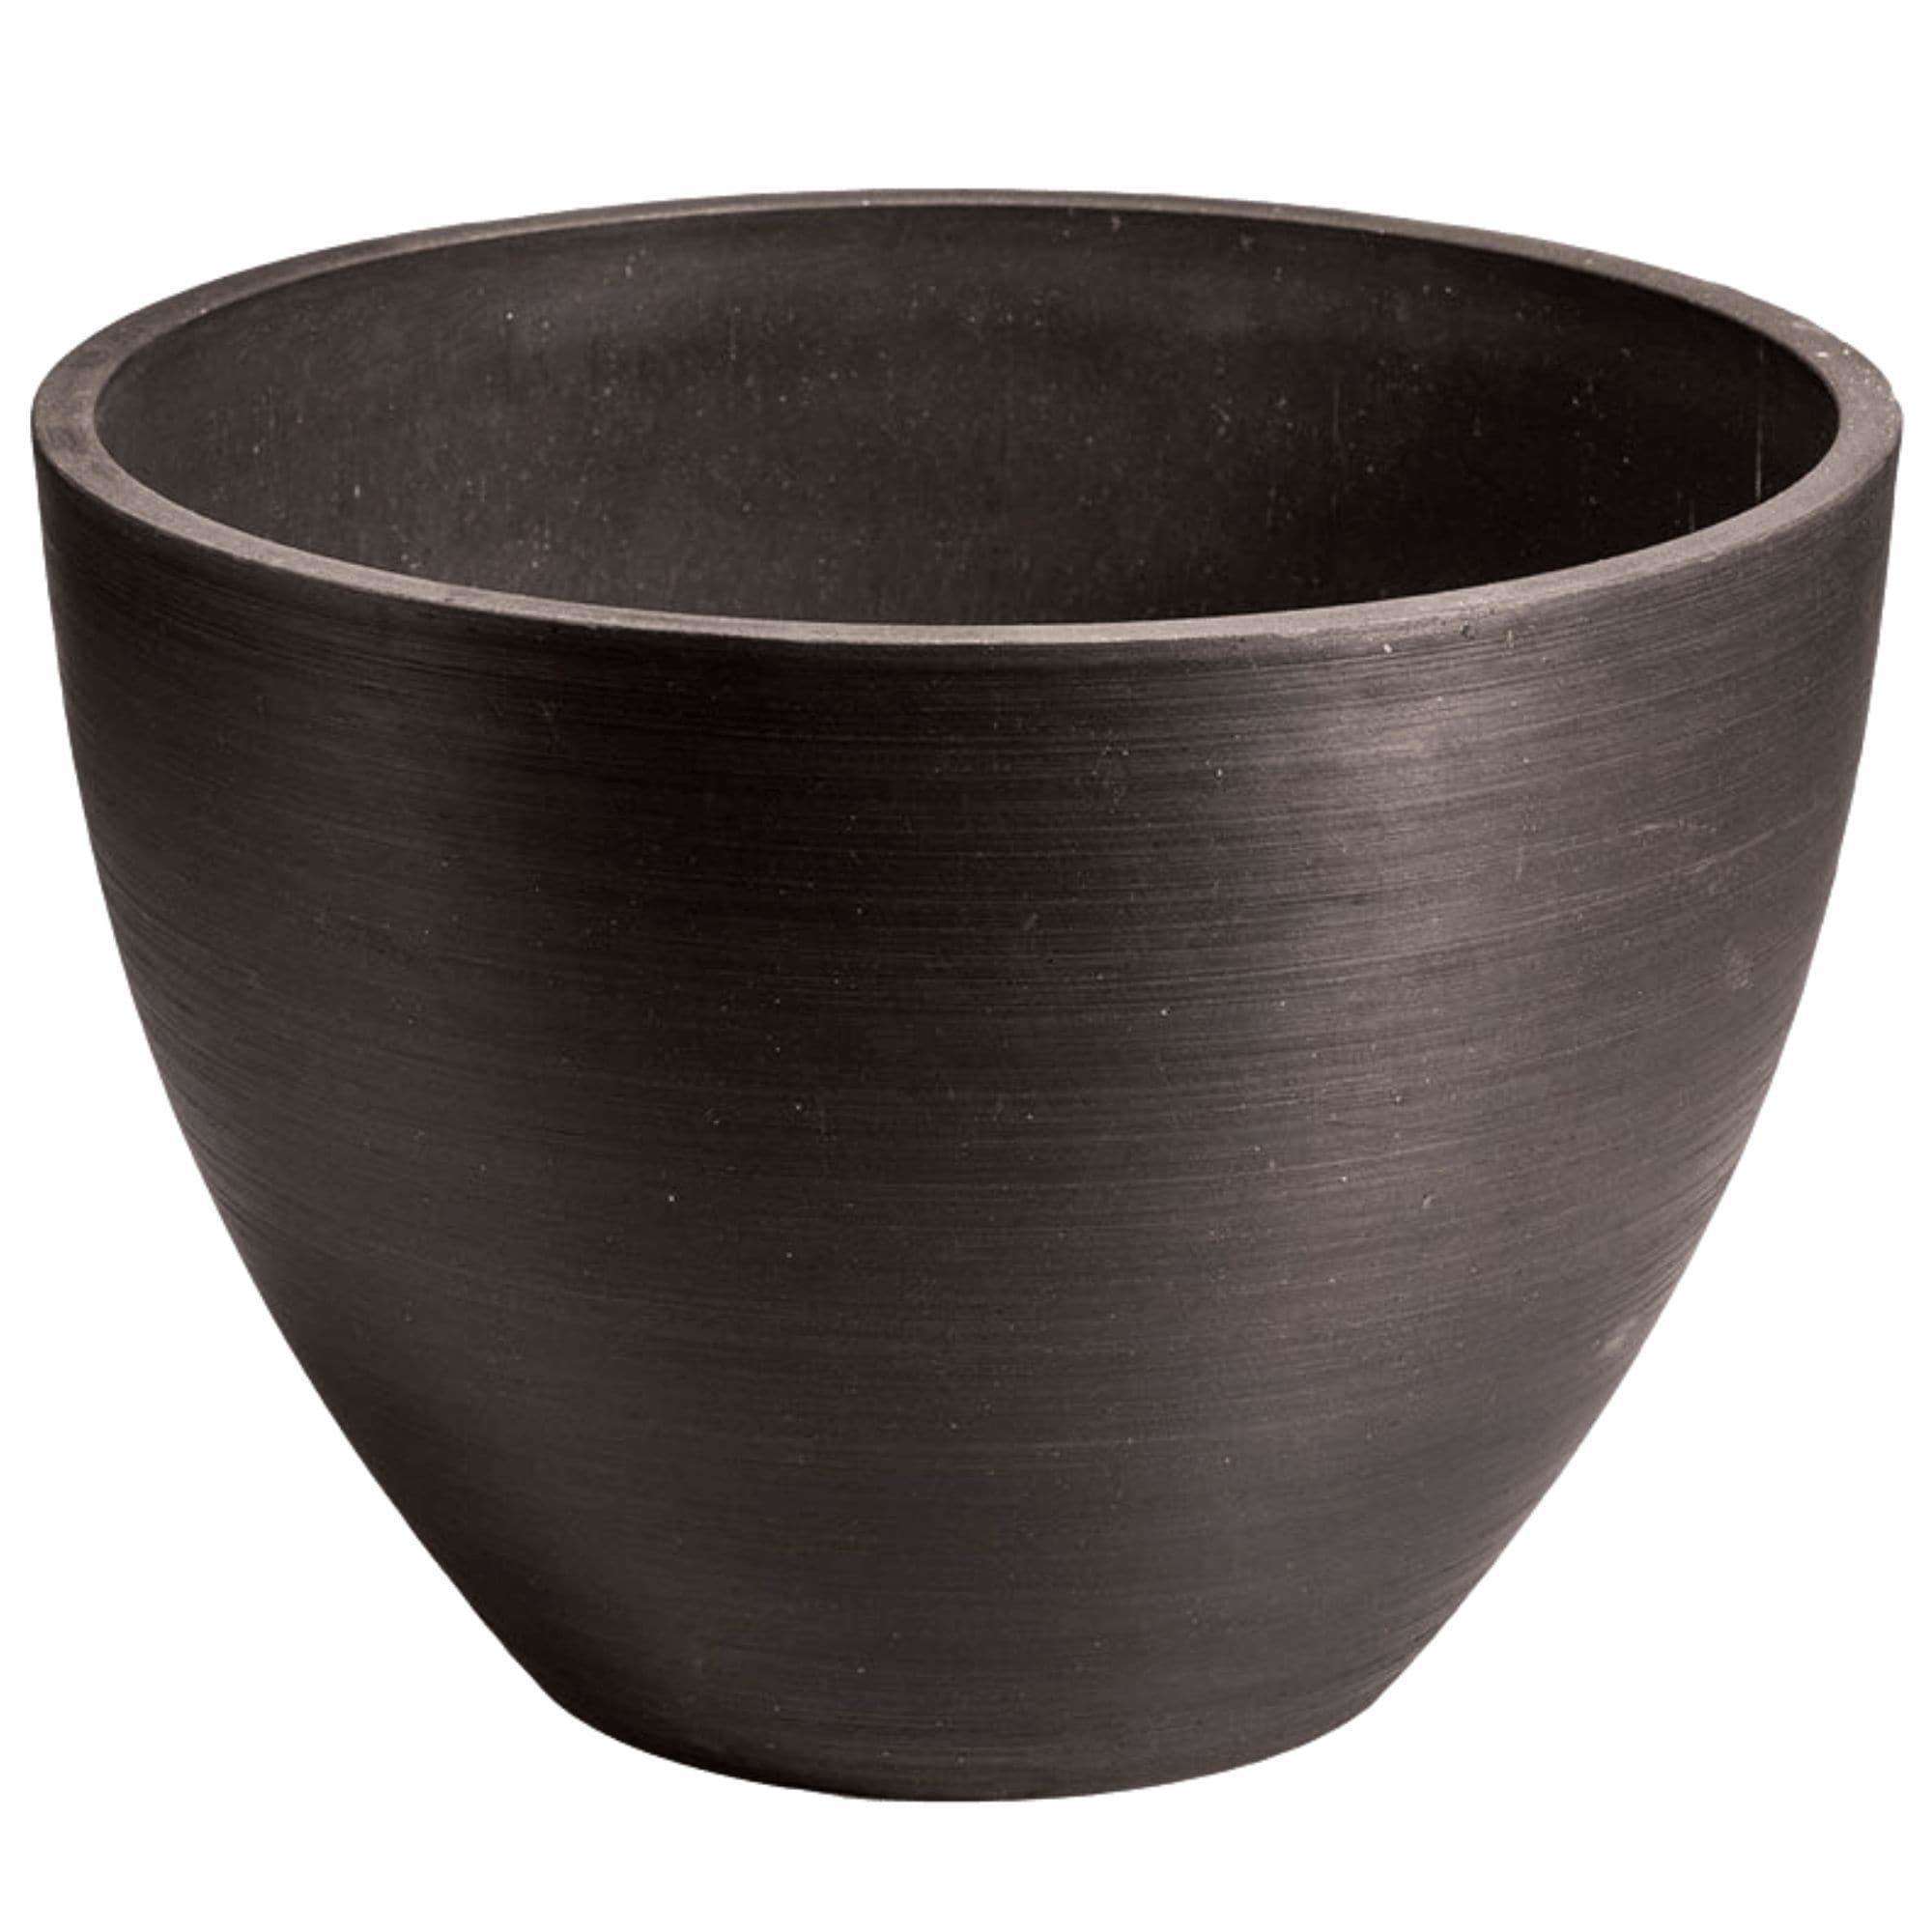 Polished Black Planter Bowl 30cm - Designer Vertical Gardens Pots